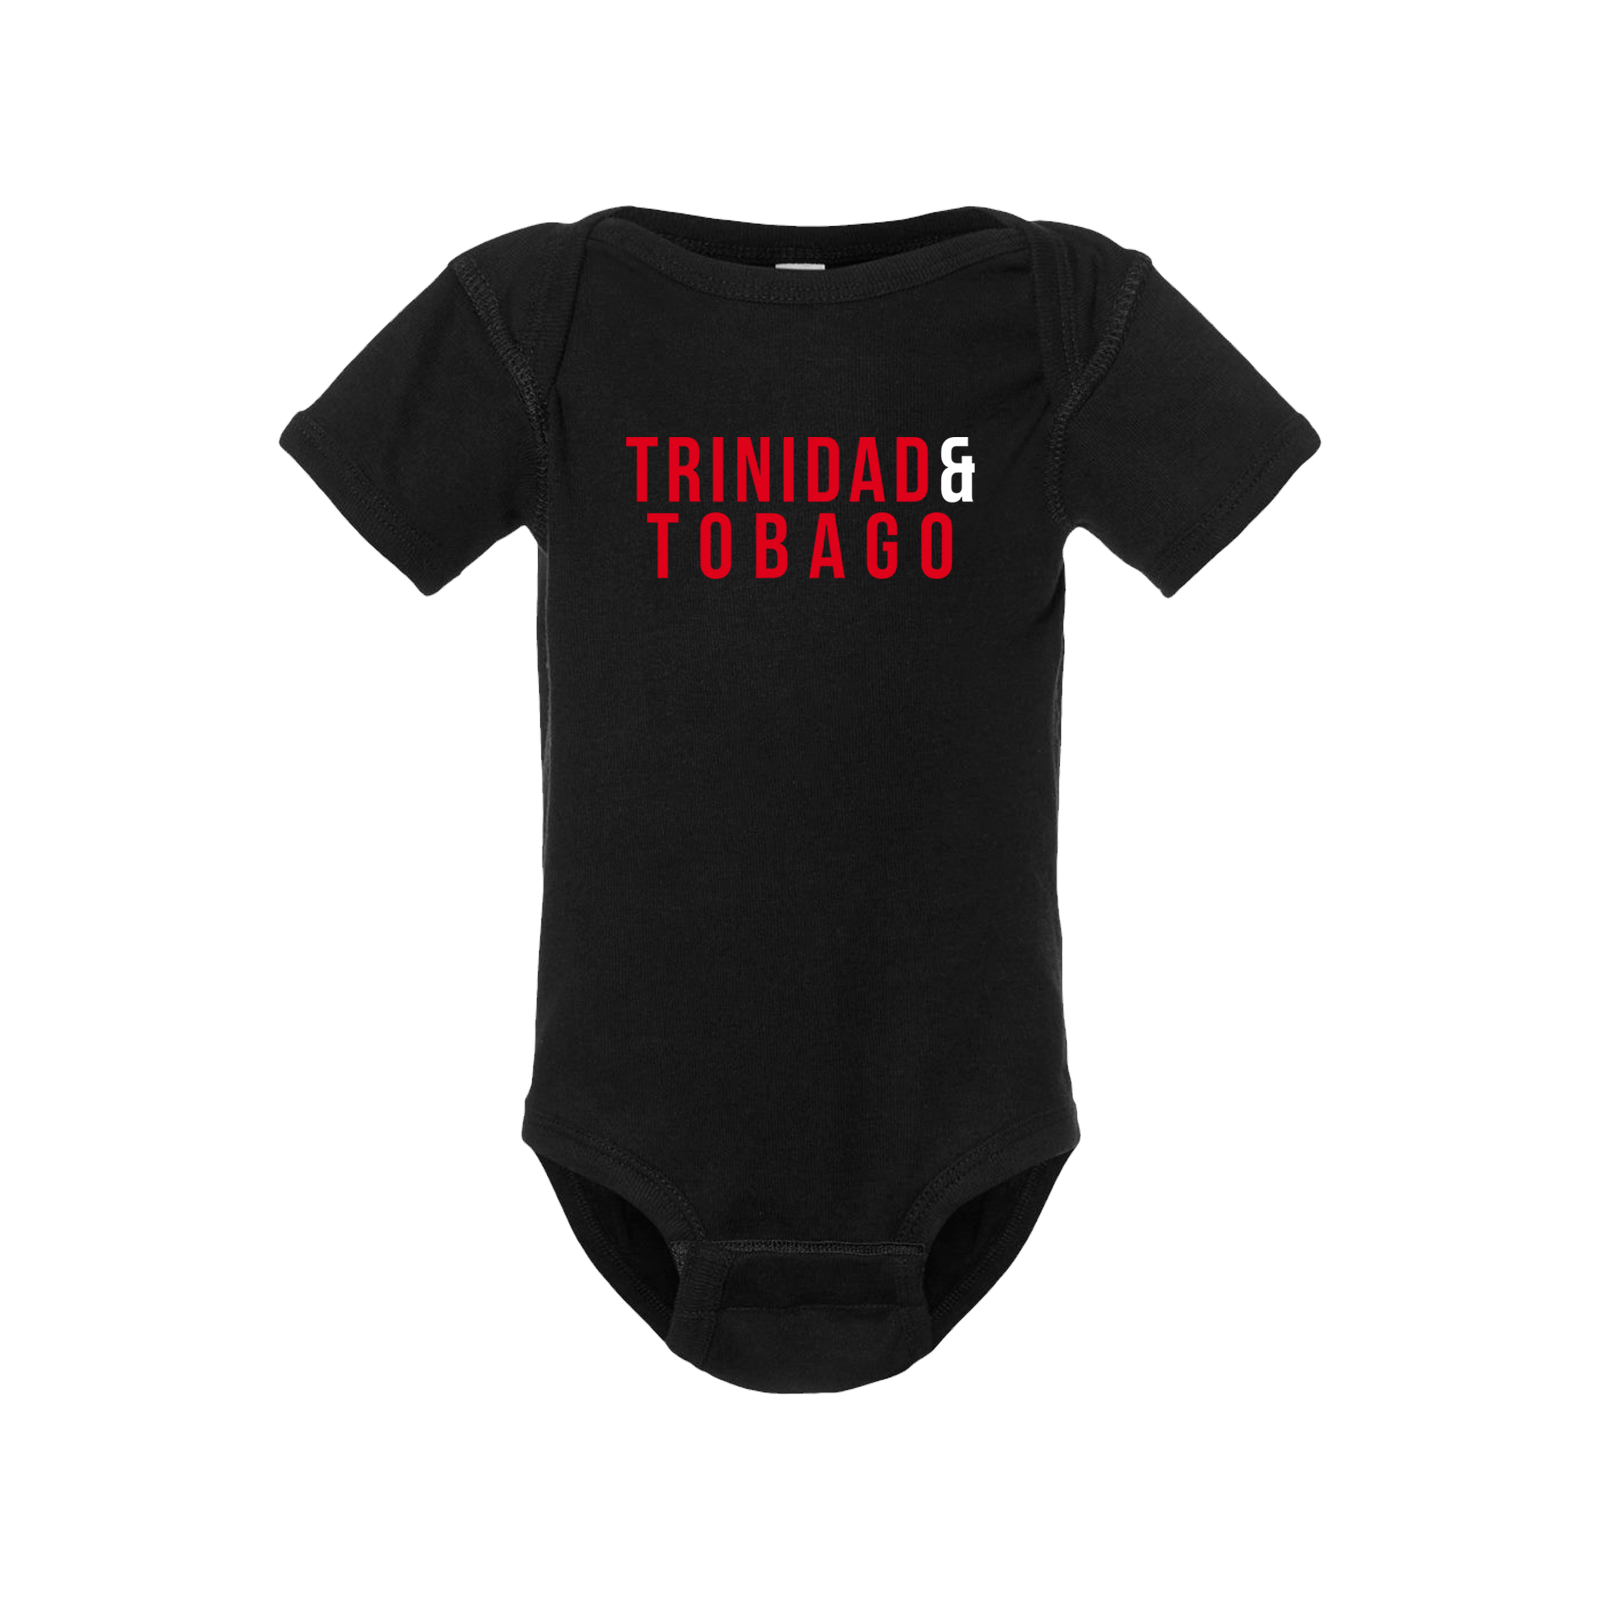 Trinidad & Tobago Short Sleeve Onesie - Babies & Toddlers